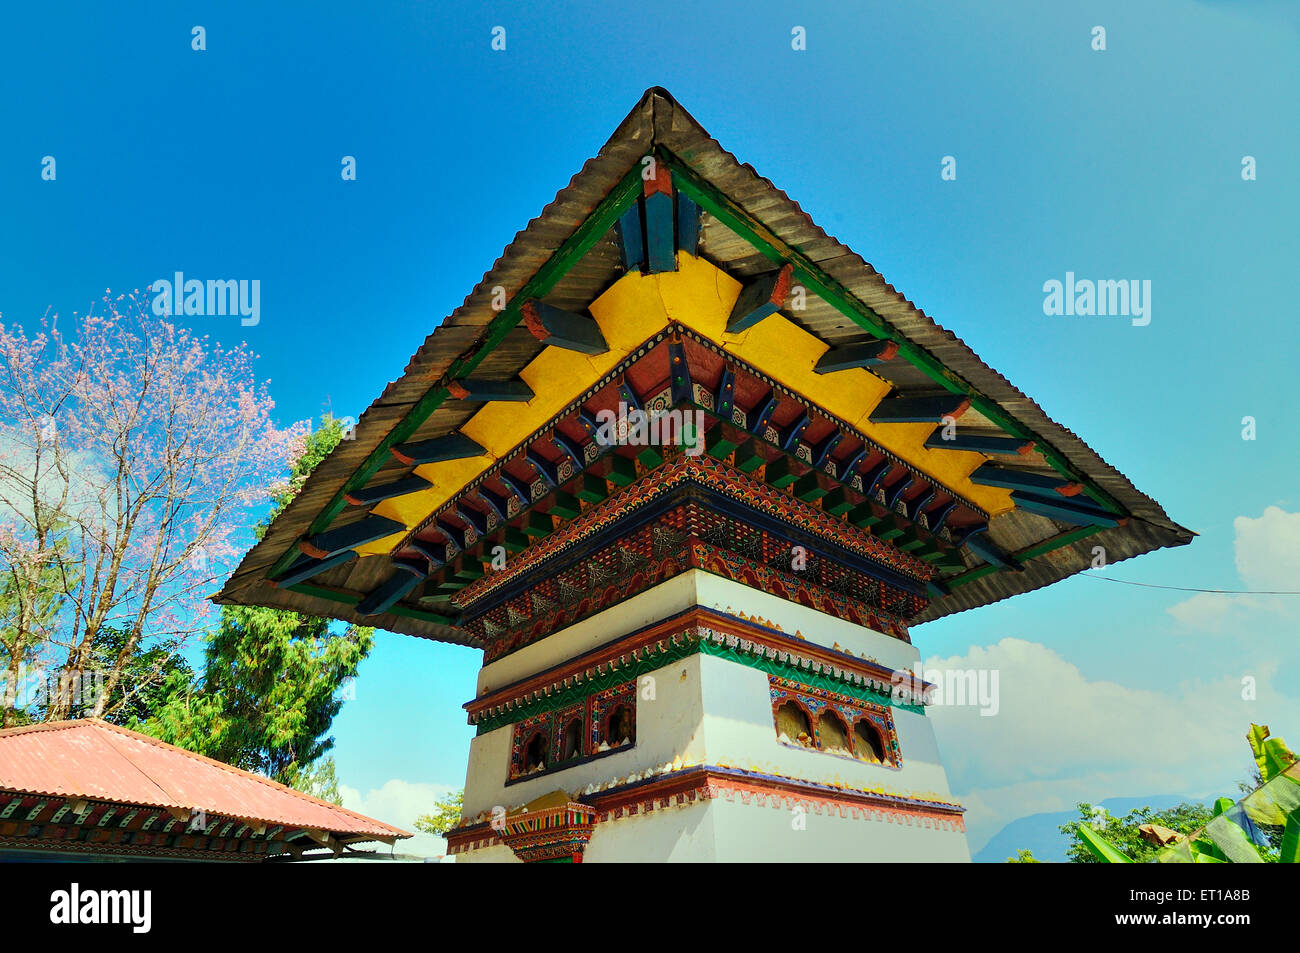 Kloster-Architektur Sillery Gaon Sikkim Indien Asien Stockfoto